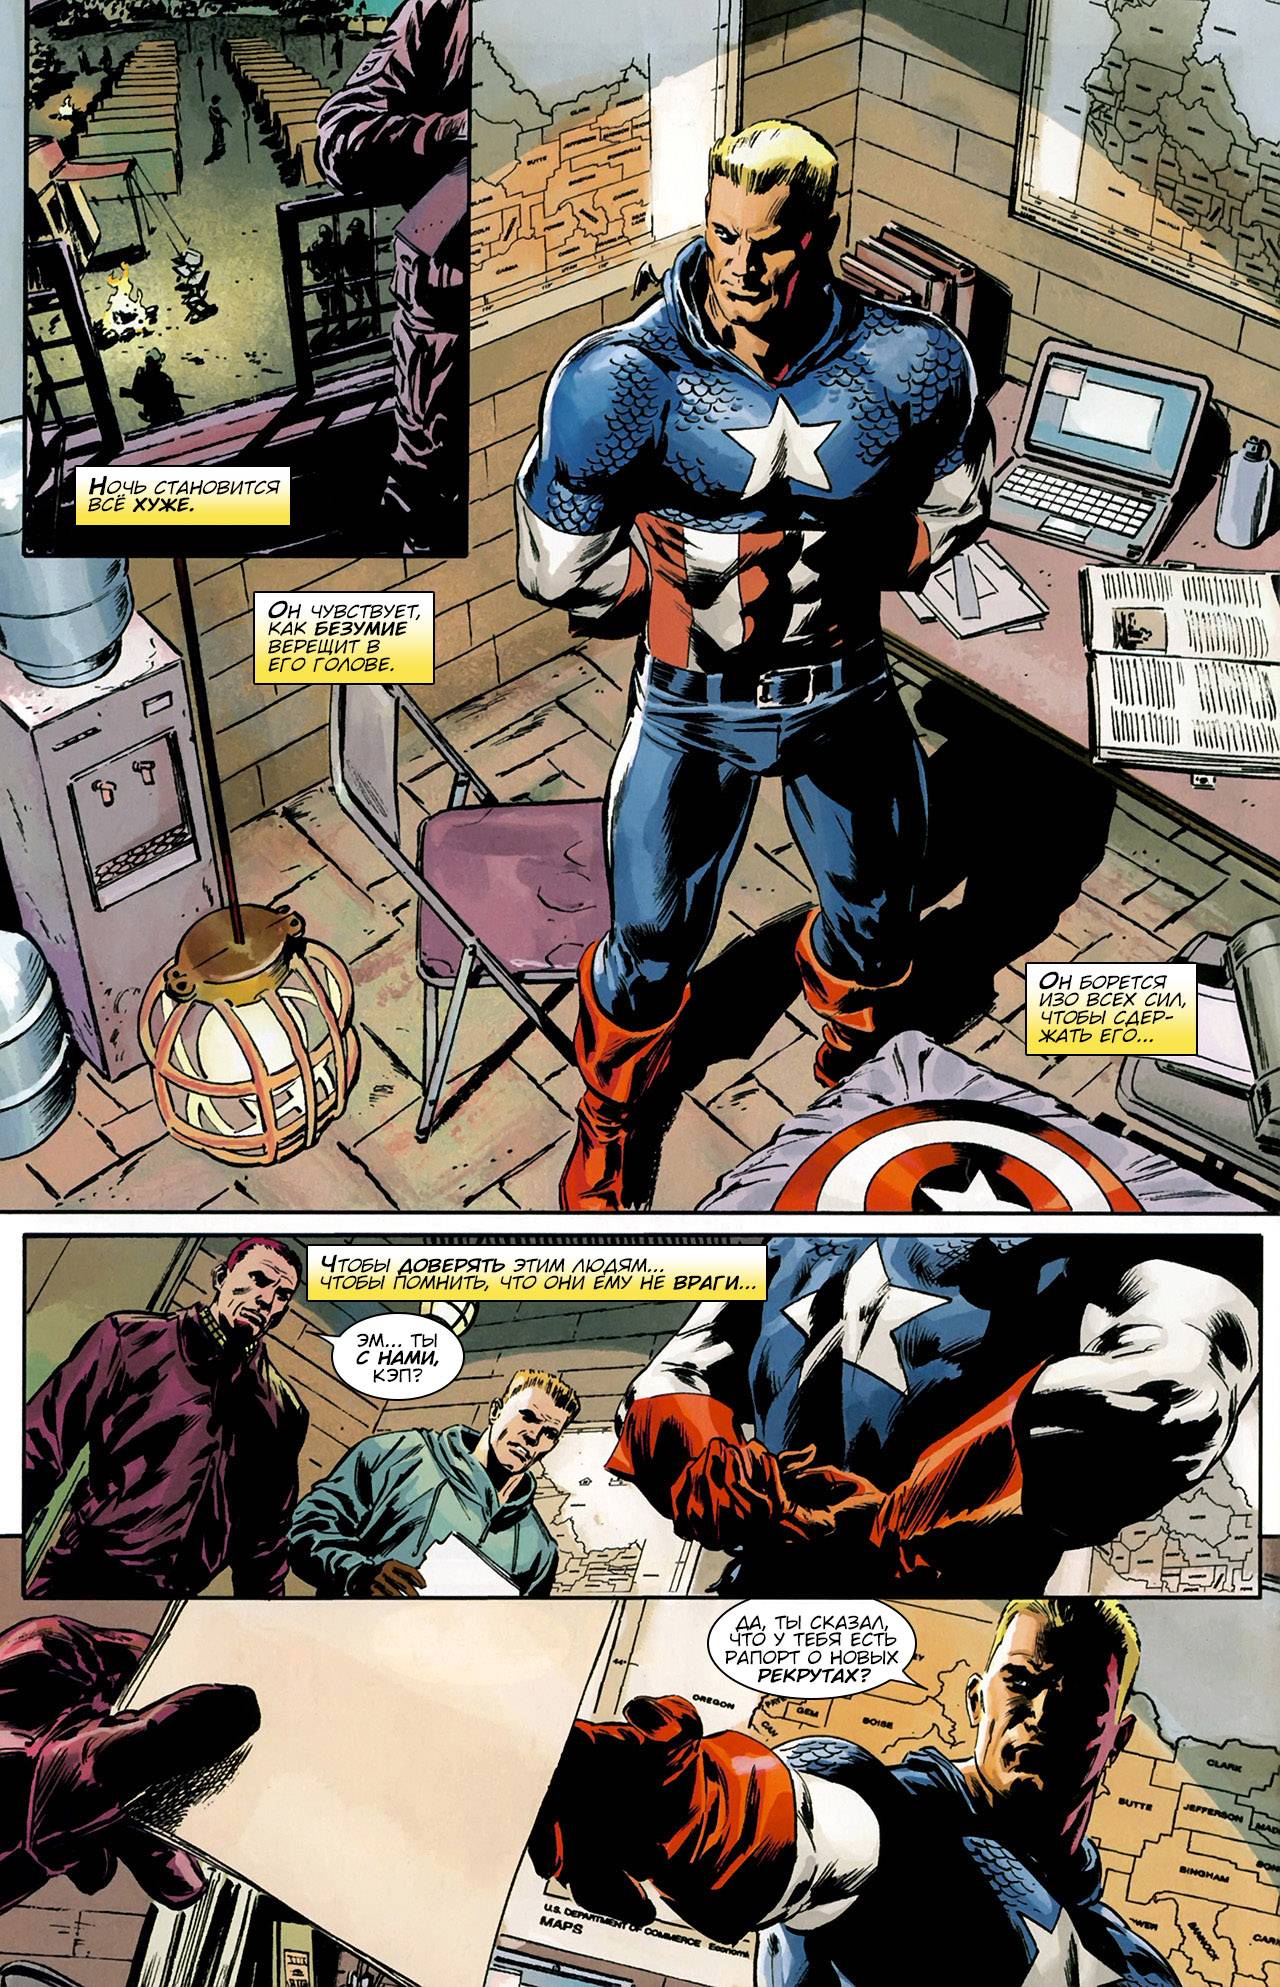 Капитан Америка №602 онлайн